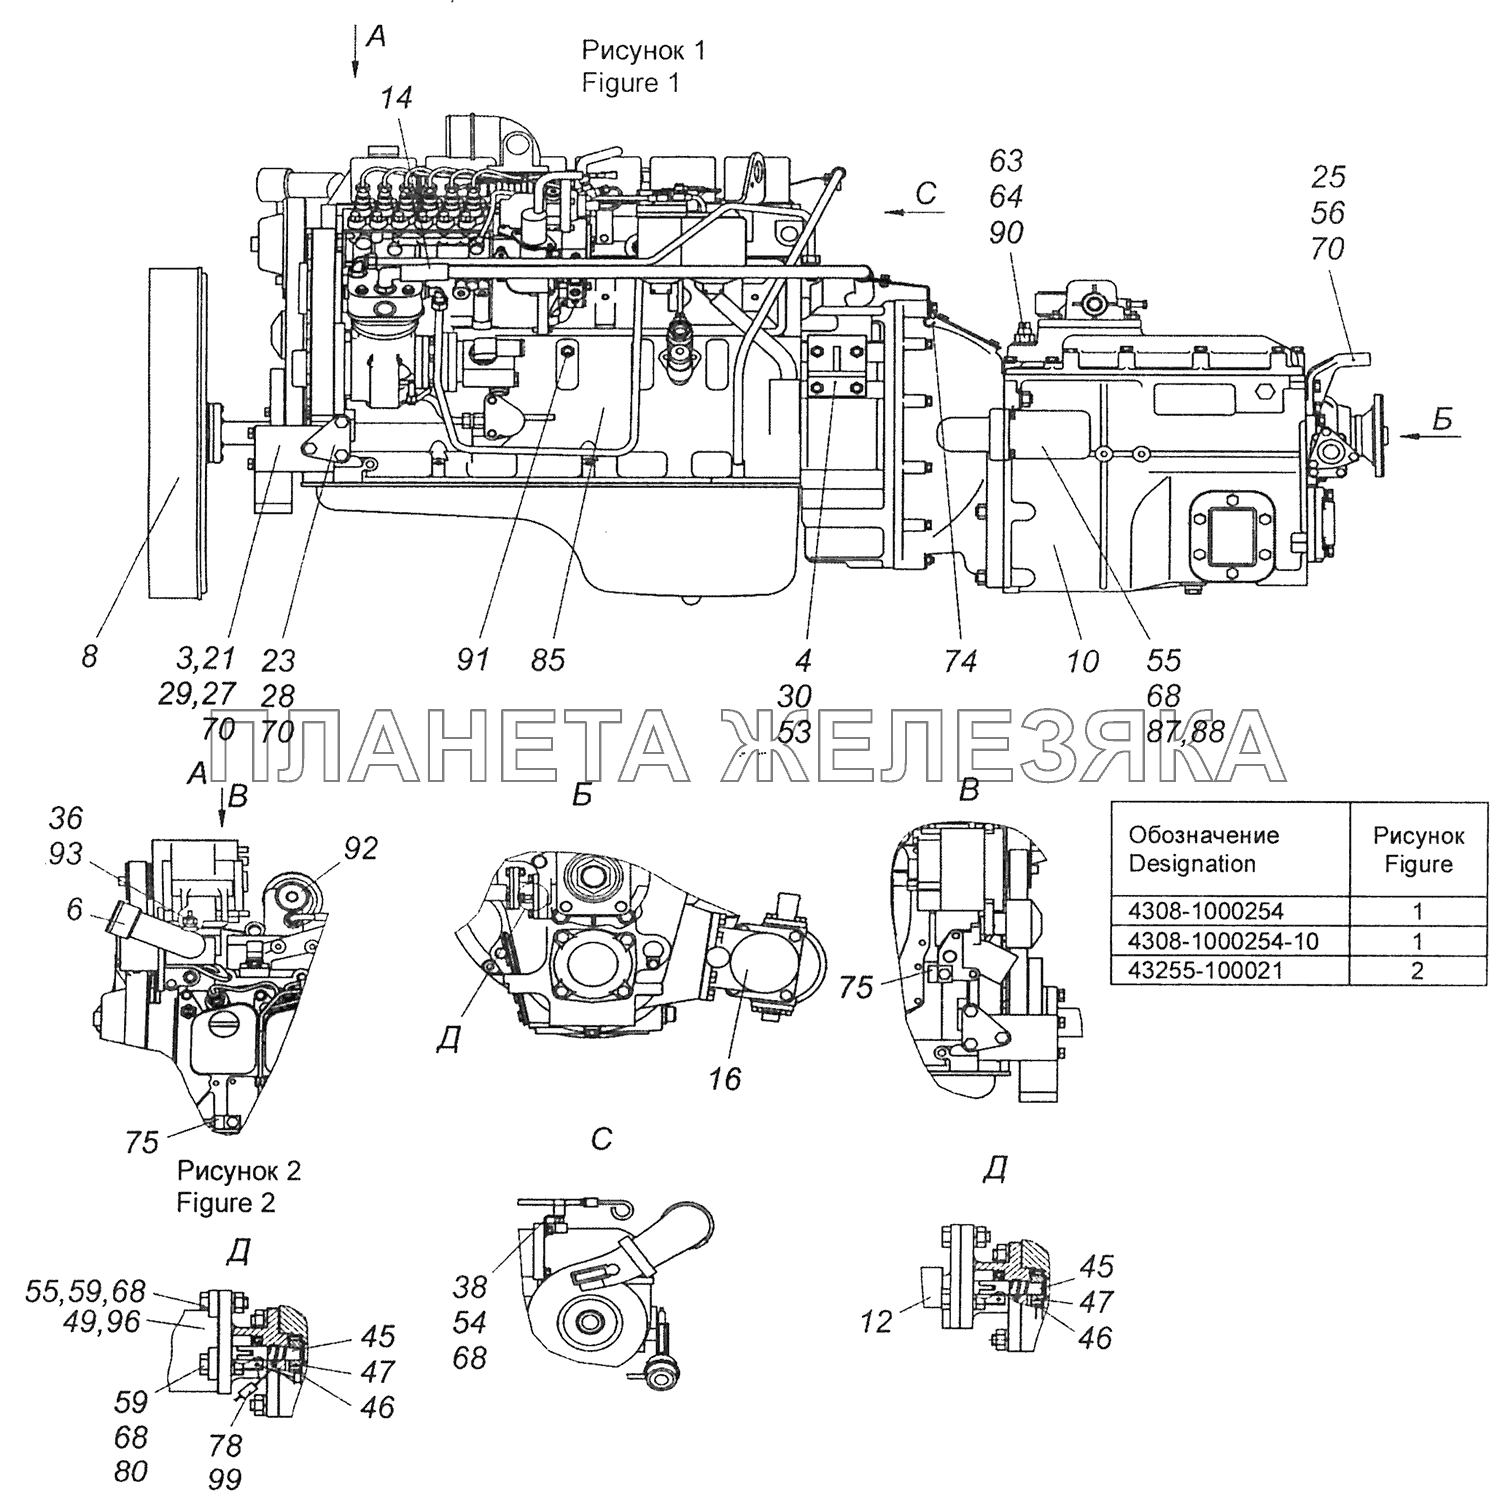 43255-1000251 Агрегат силовой, укомплектованный для установки на автомобиль КамАЗ-43255 (Евро-2)